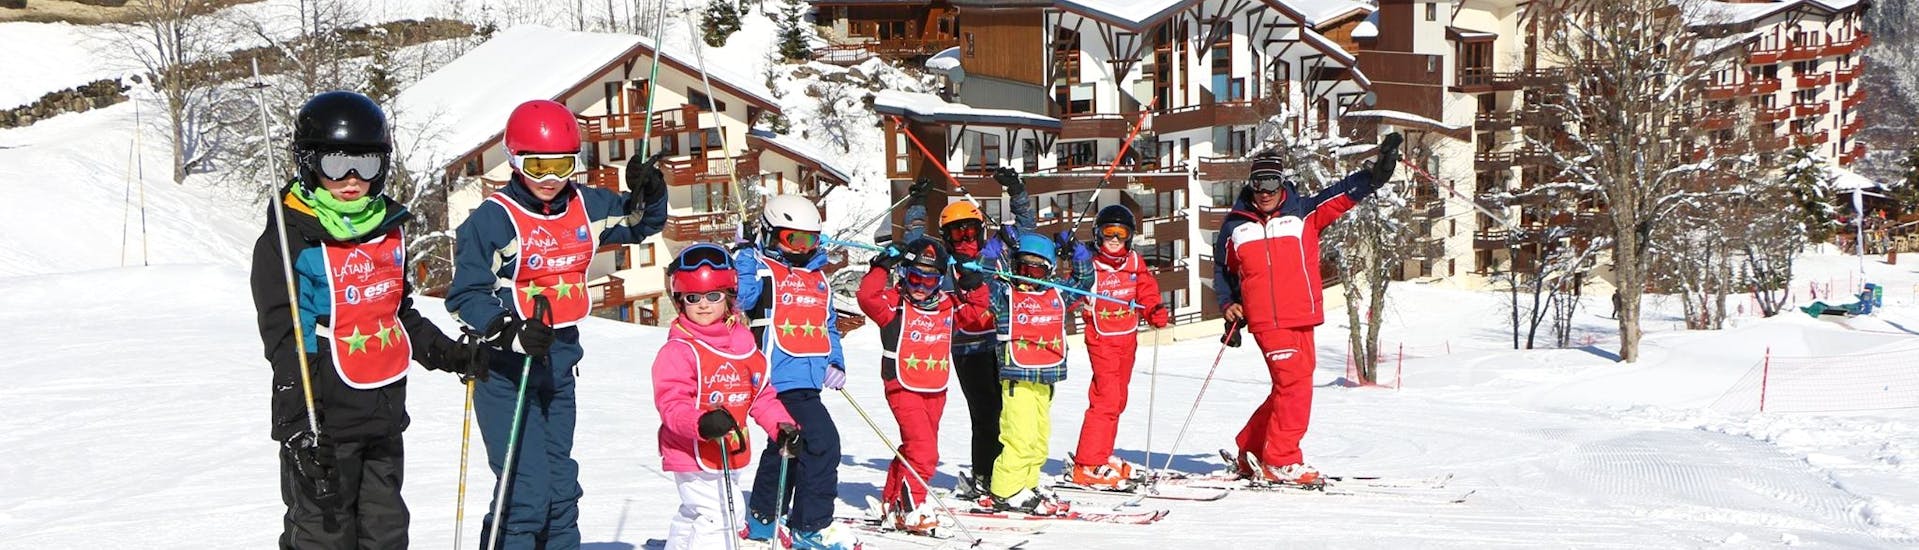 Des enfants se tiennent sur la piste pendant leur Cours de ski Enfants (3-12 ans) pour Tous niveaux avec ESF La Tania.